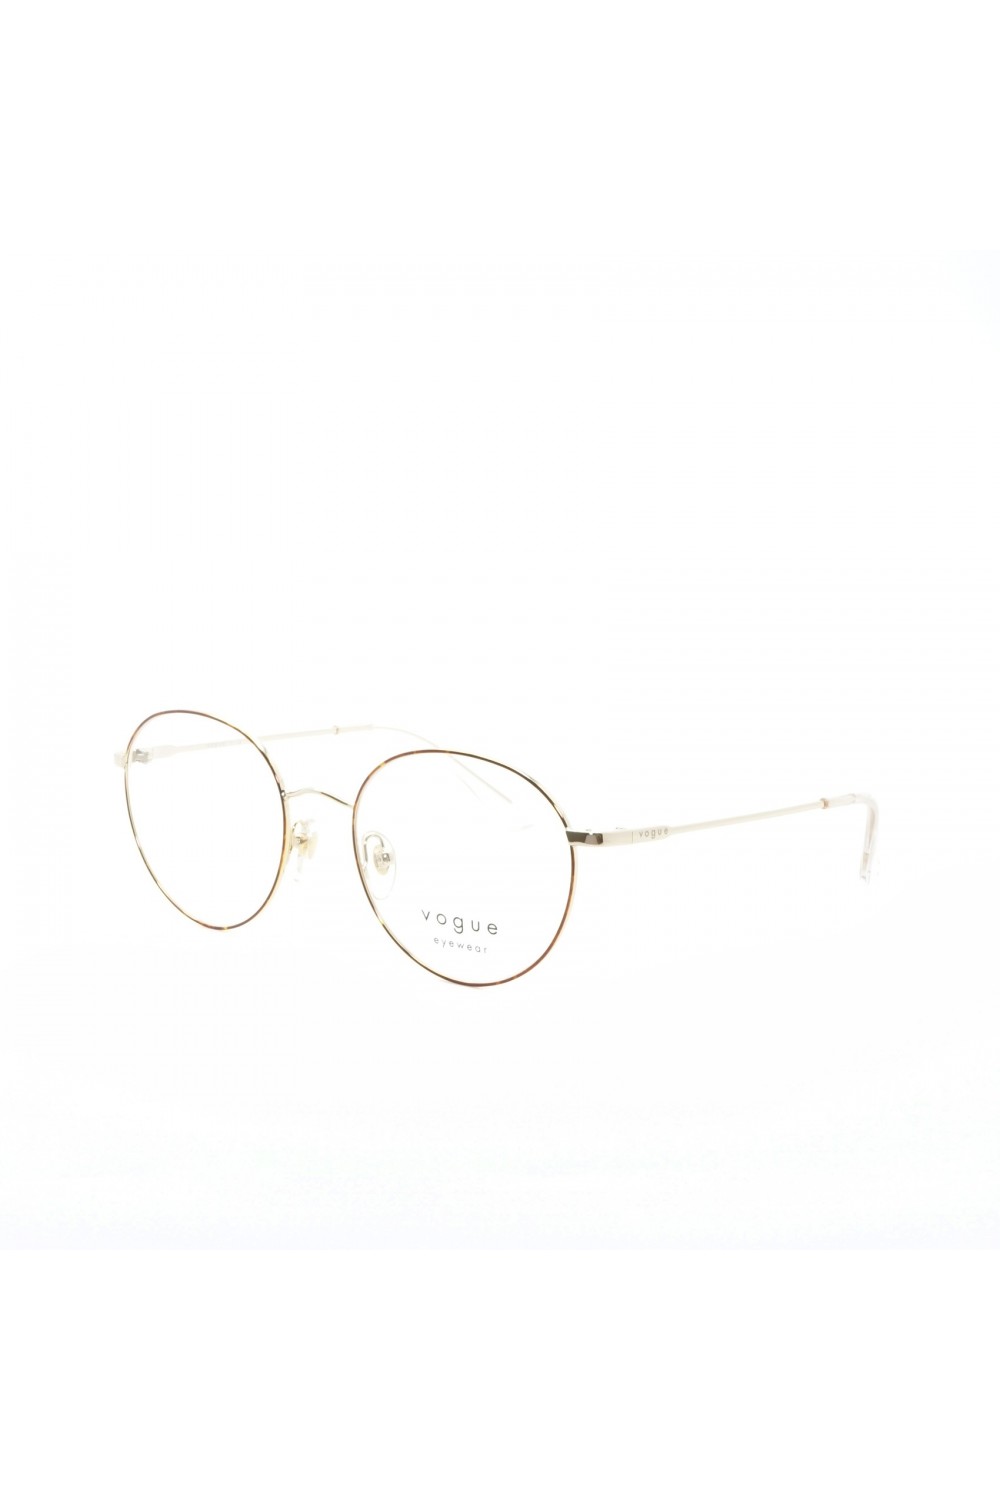 Vogue - Occhiali da vista in metallo tondi per donna oro - 4177 5078